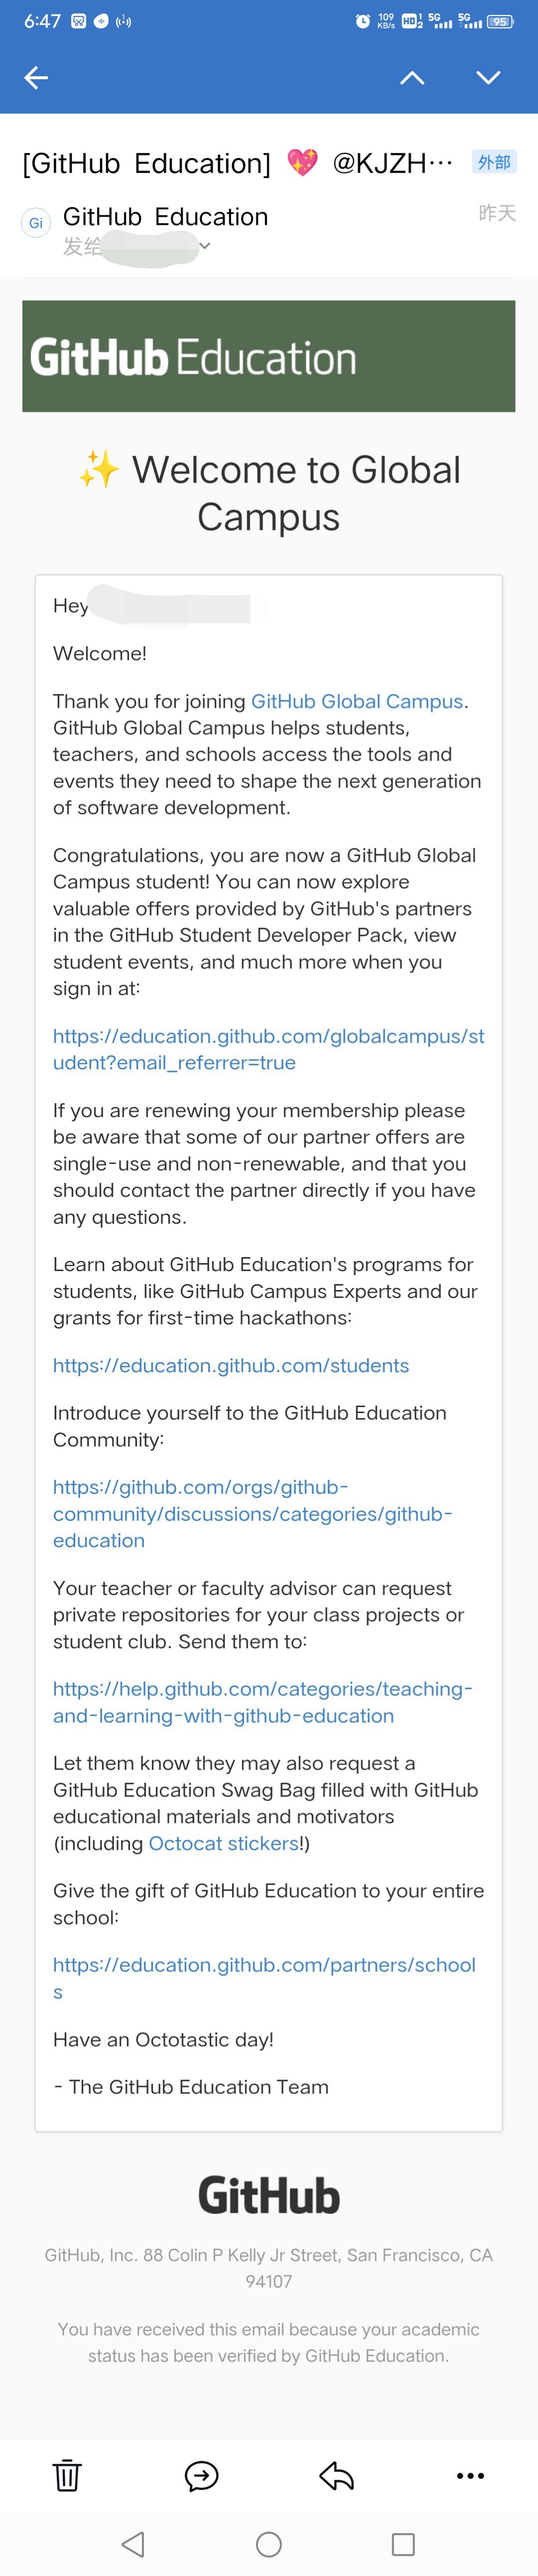 纪念一下自己Github学生包申请通过吧